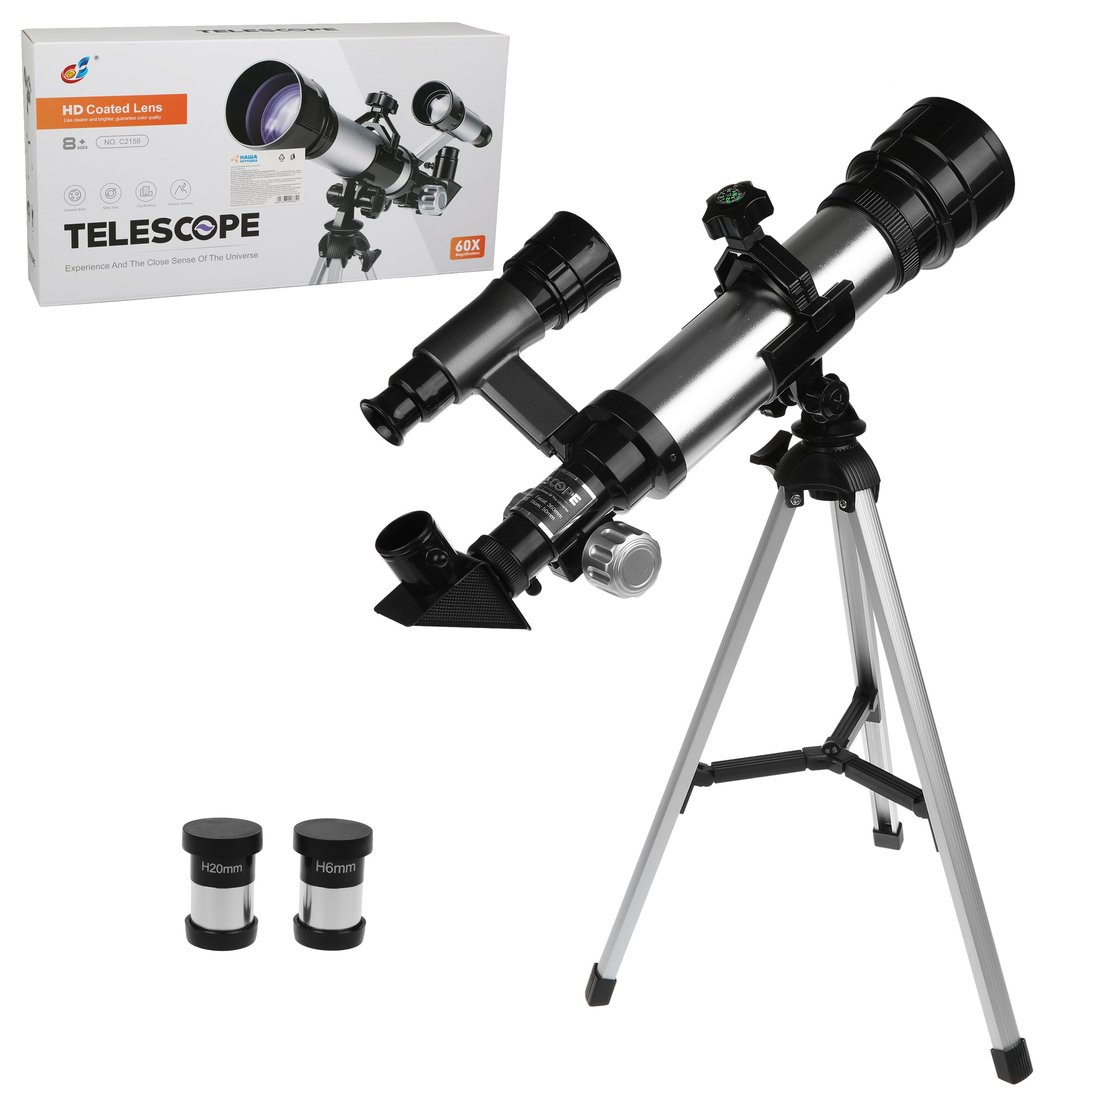 Телескоп детский Наша Игрушка 60х увеличение, 3 объектива арт. 800664 крышка jjc для объектива 58 мм deluxe